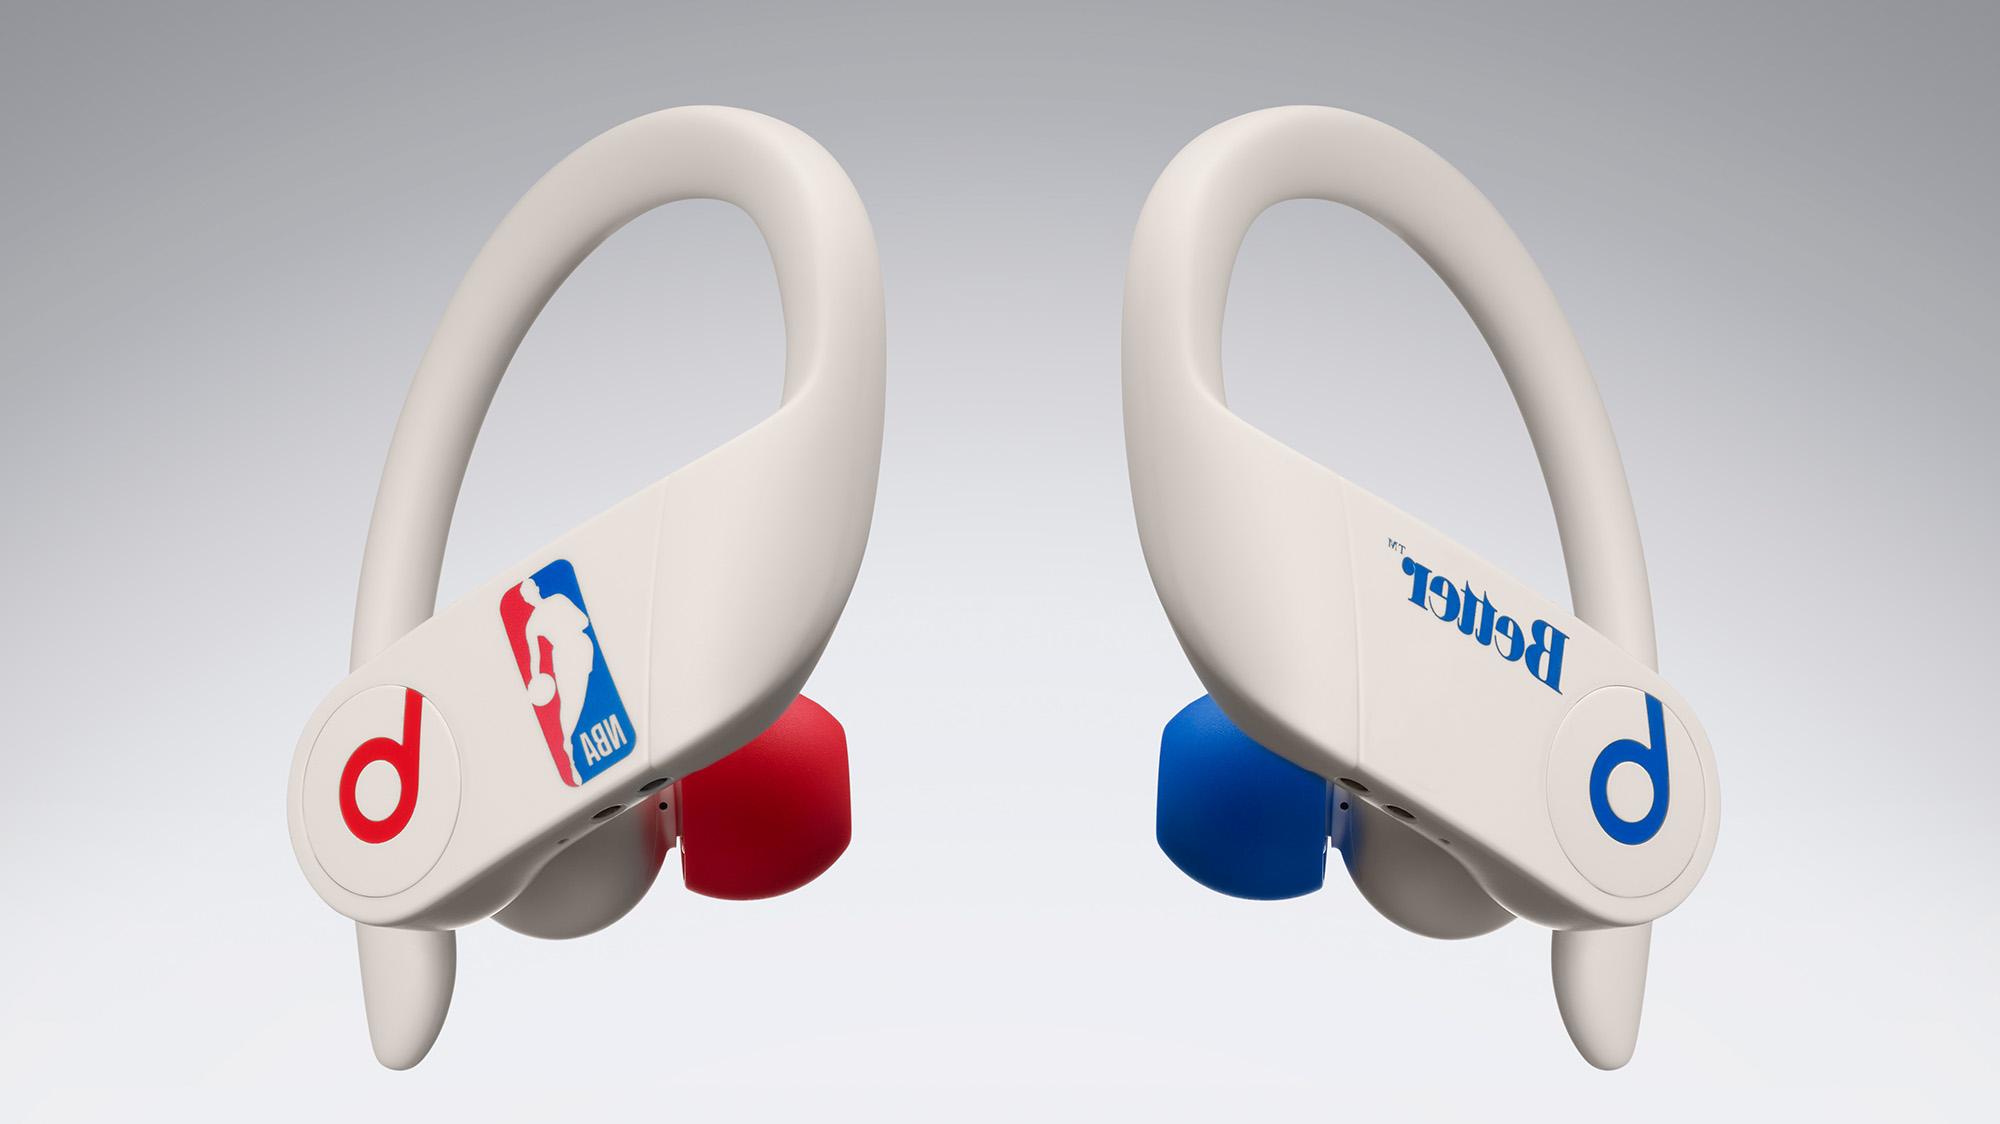 Pour les fans de la NBA : Apple a présenté une version spéciale de Powerbeats Pro